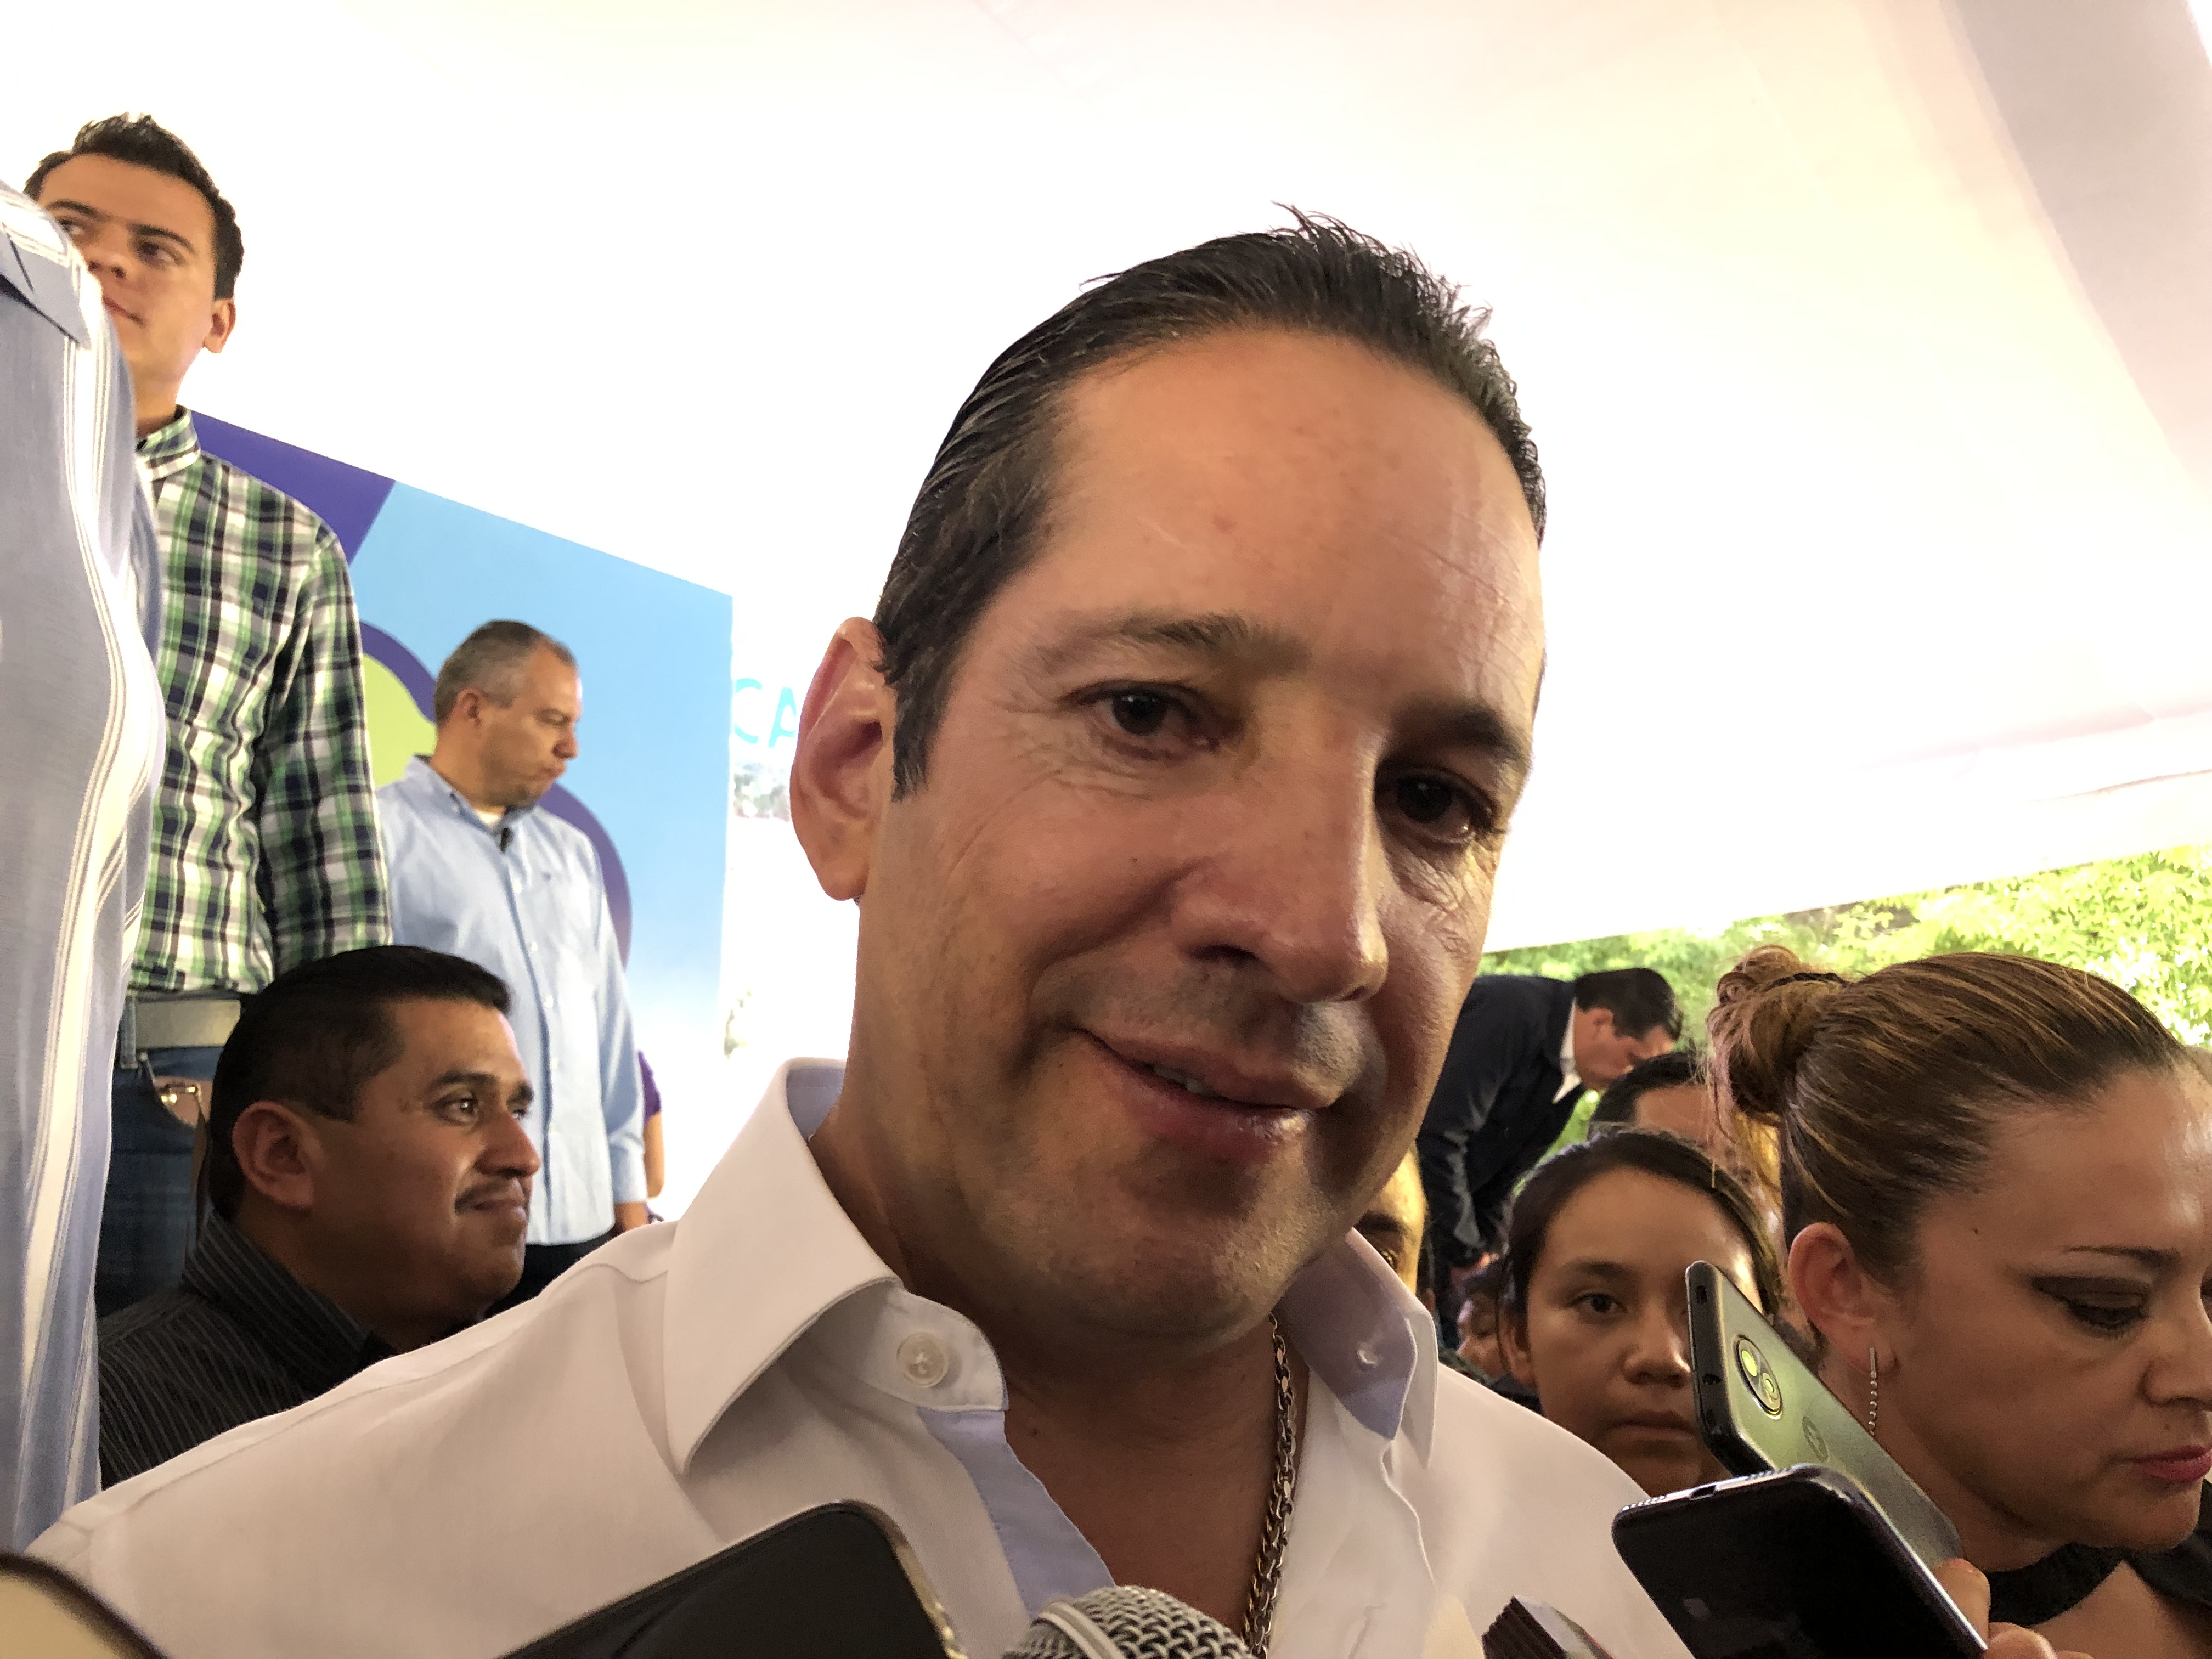  “Alianza por la Concordia podría firmarse en agosto”: Pancho Domínguez